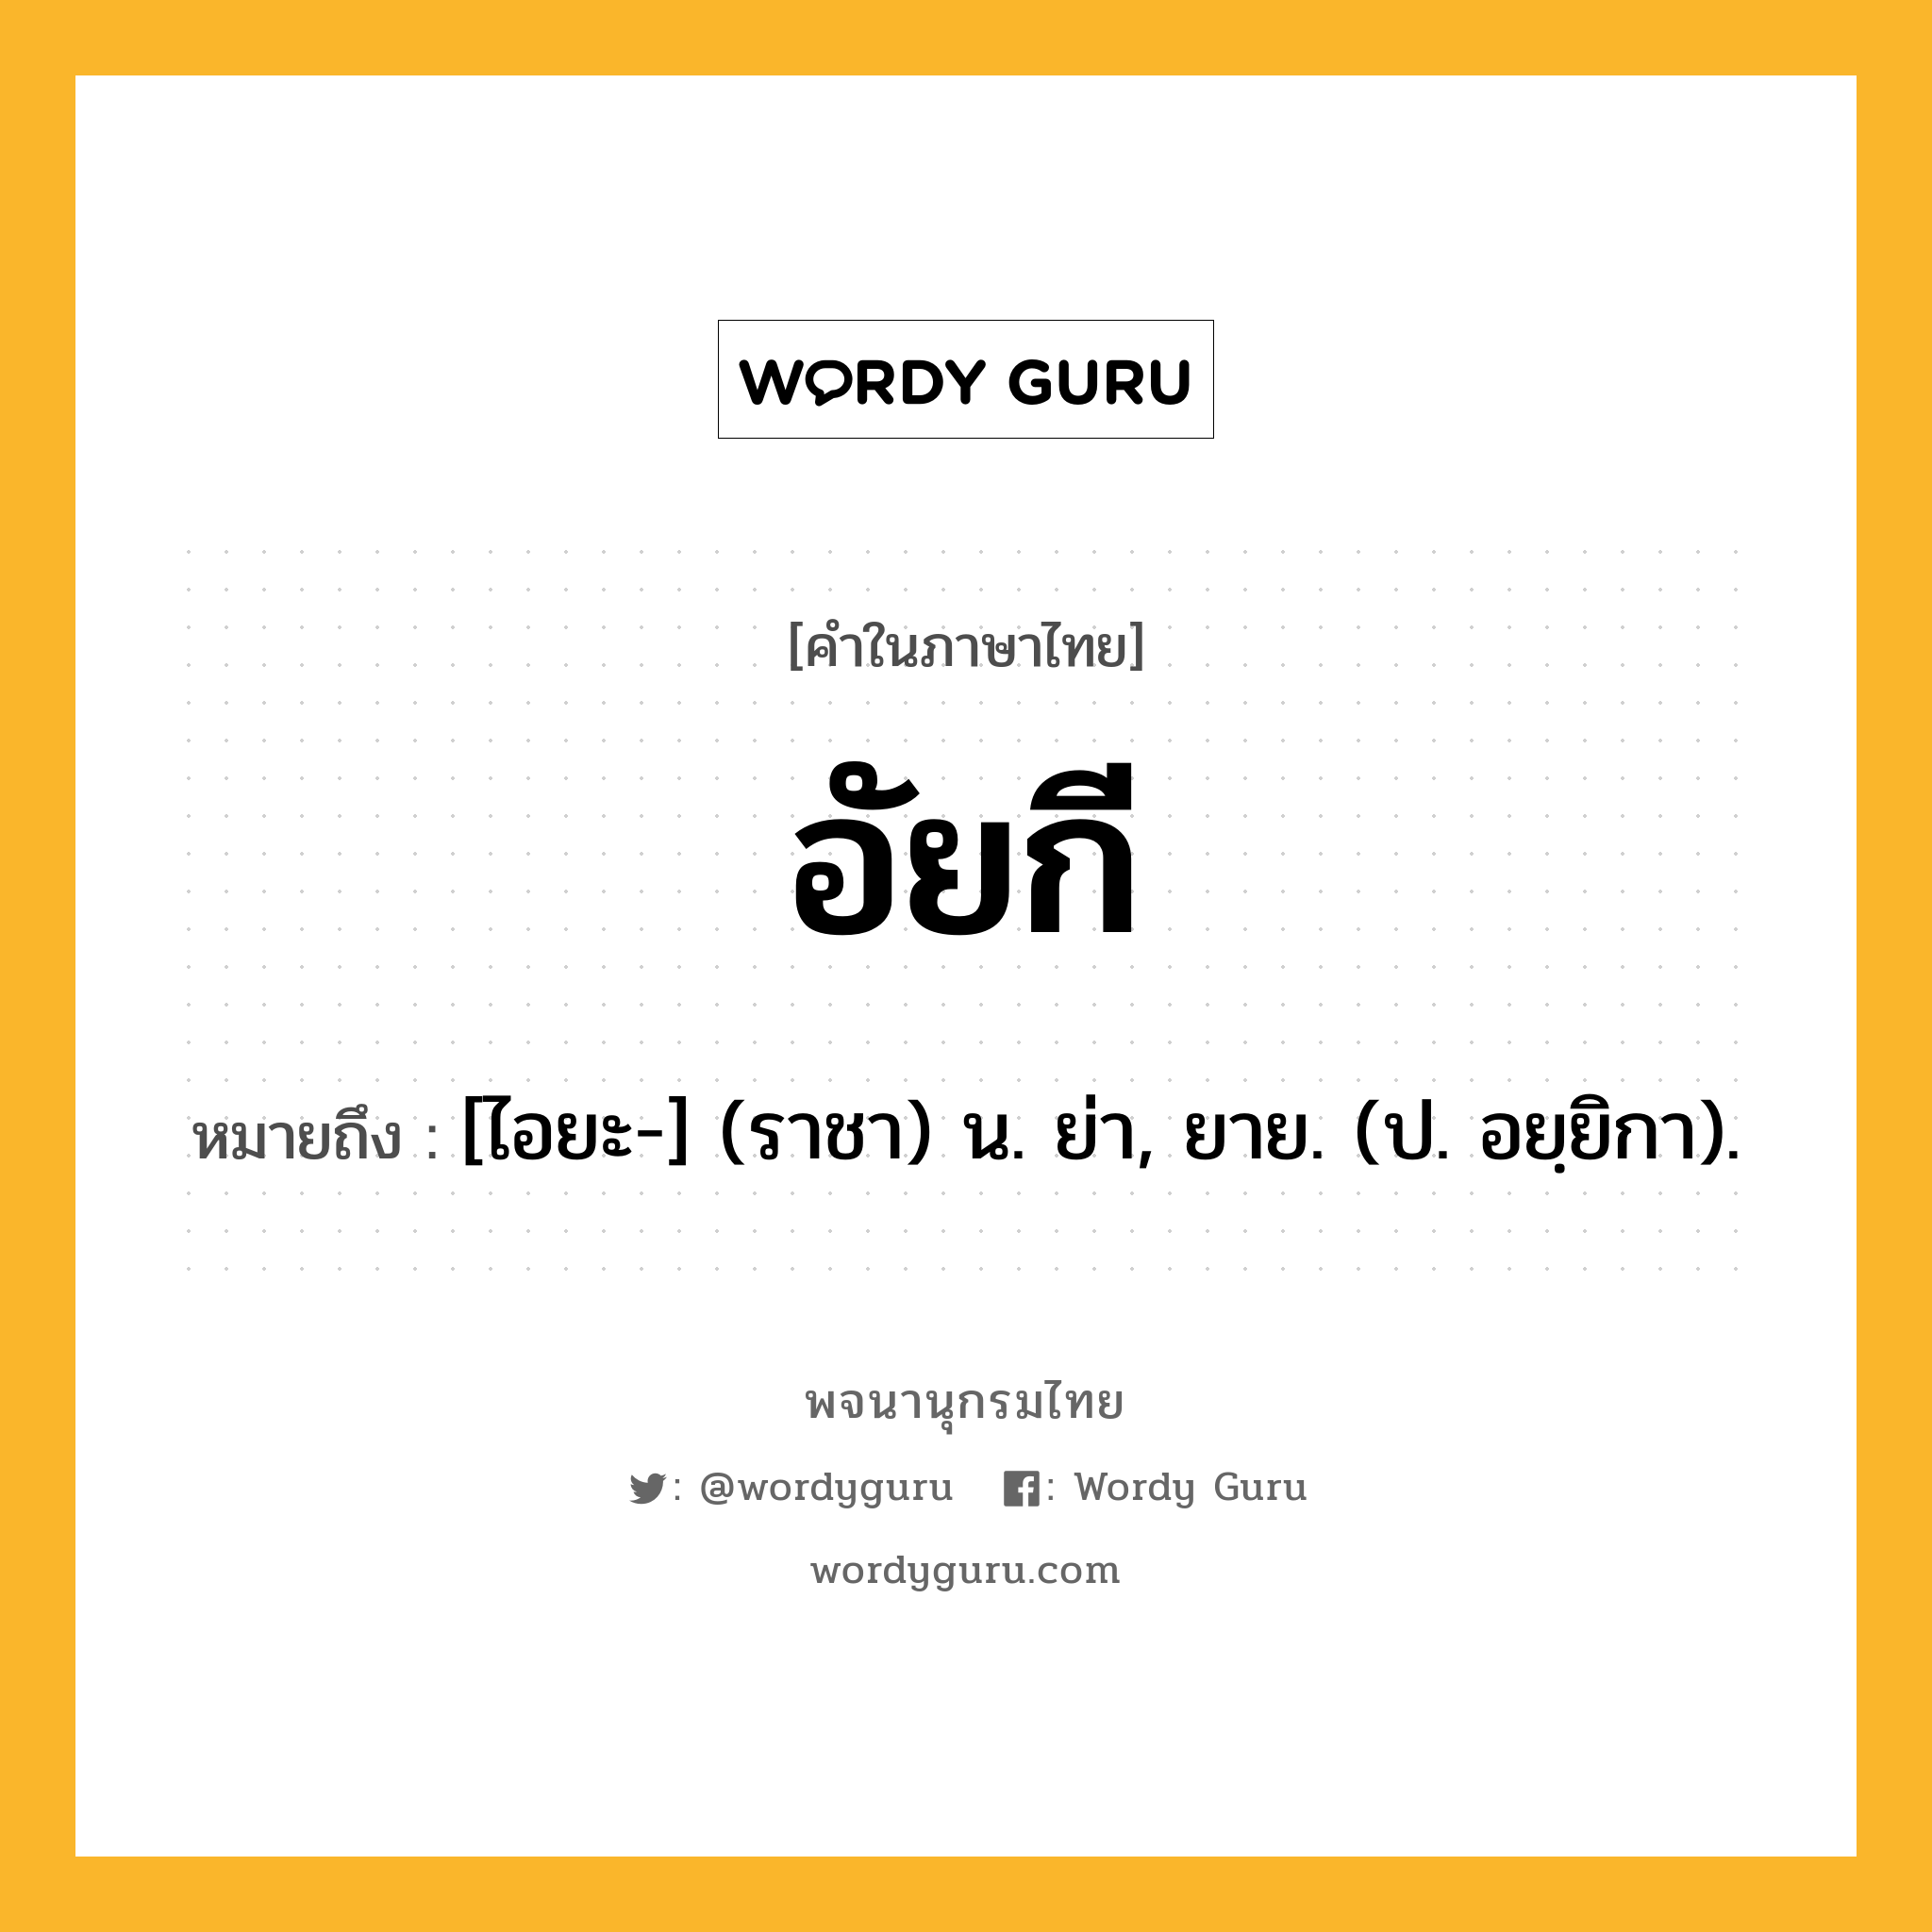 อัยกี ความหมาย หมายถึงอะไร?, คำในภาษาไทย อัยกี หมายถึง [ไอยะ-] (ราชา) น. ย่า, ยาย. (ป. อยฺยิกา).